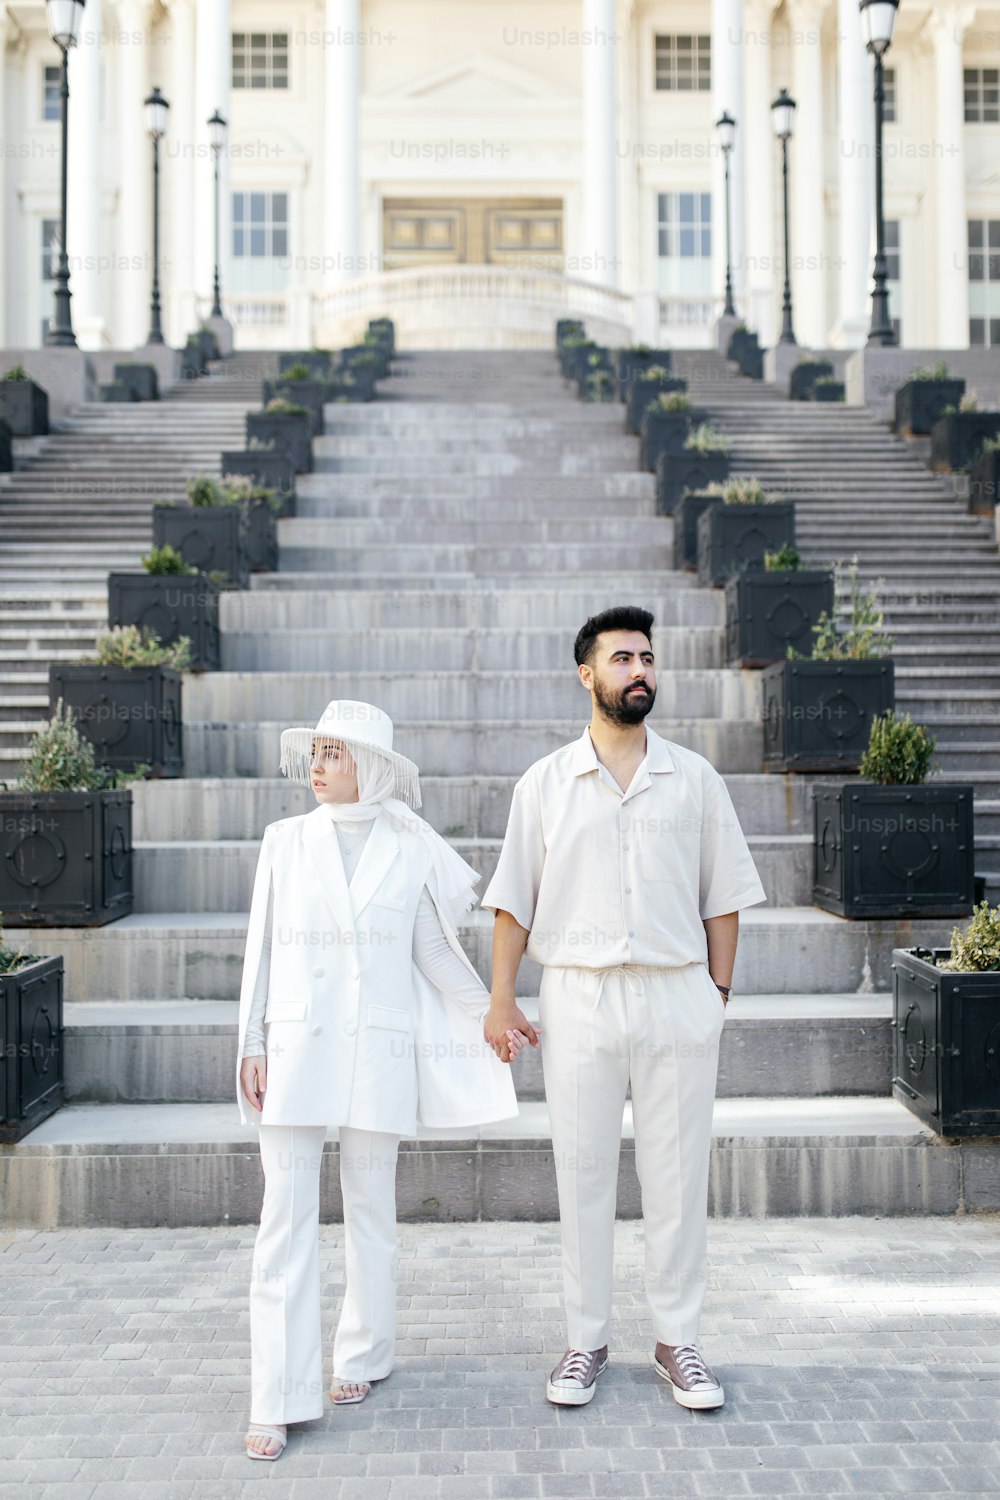 Un hombre y una mujer de pie frente a un edificio